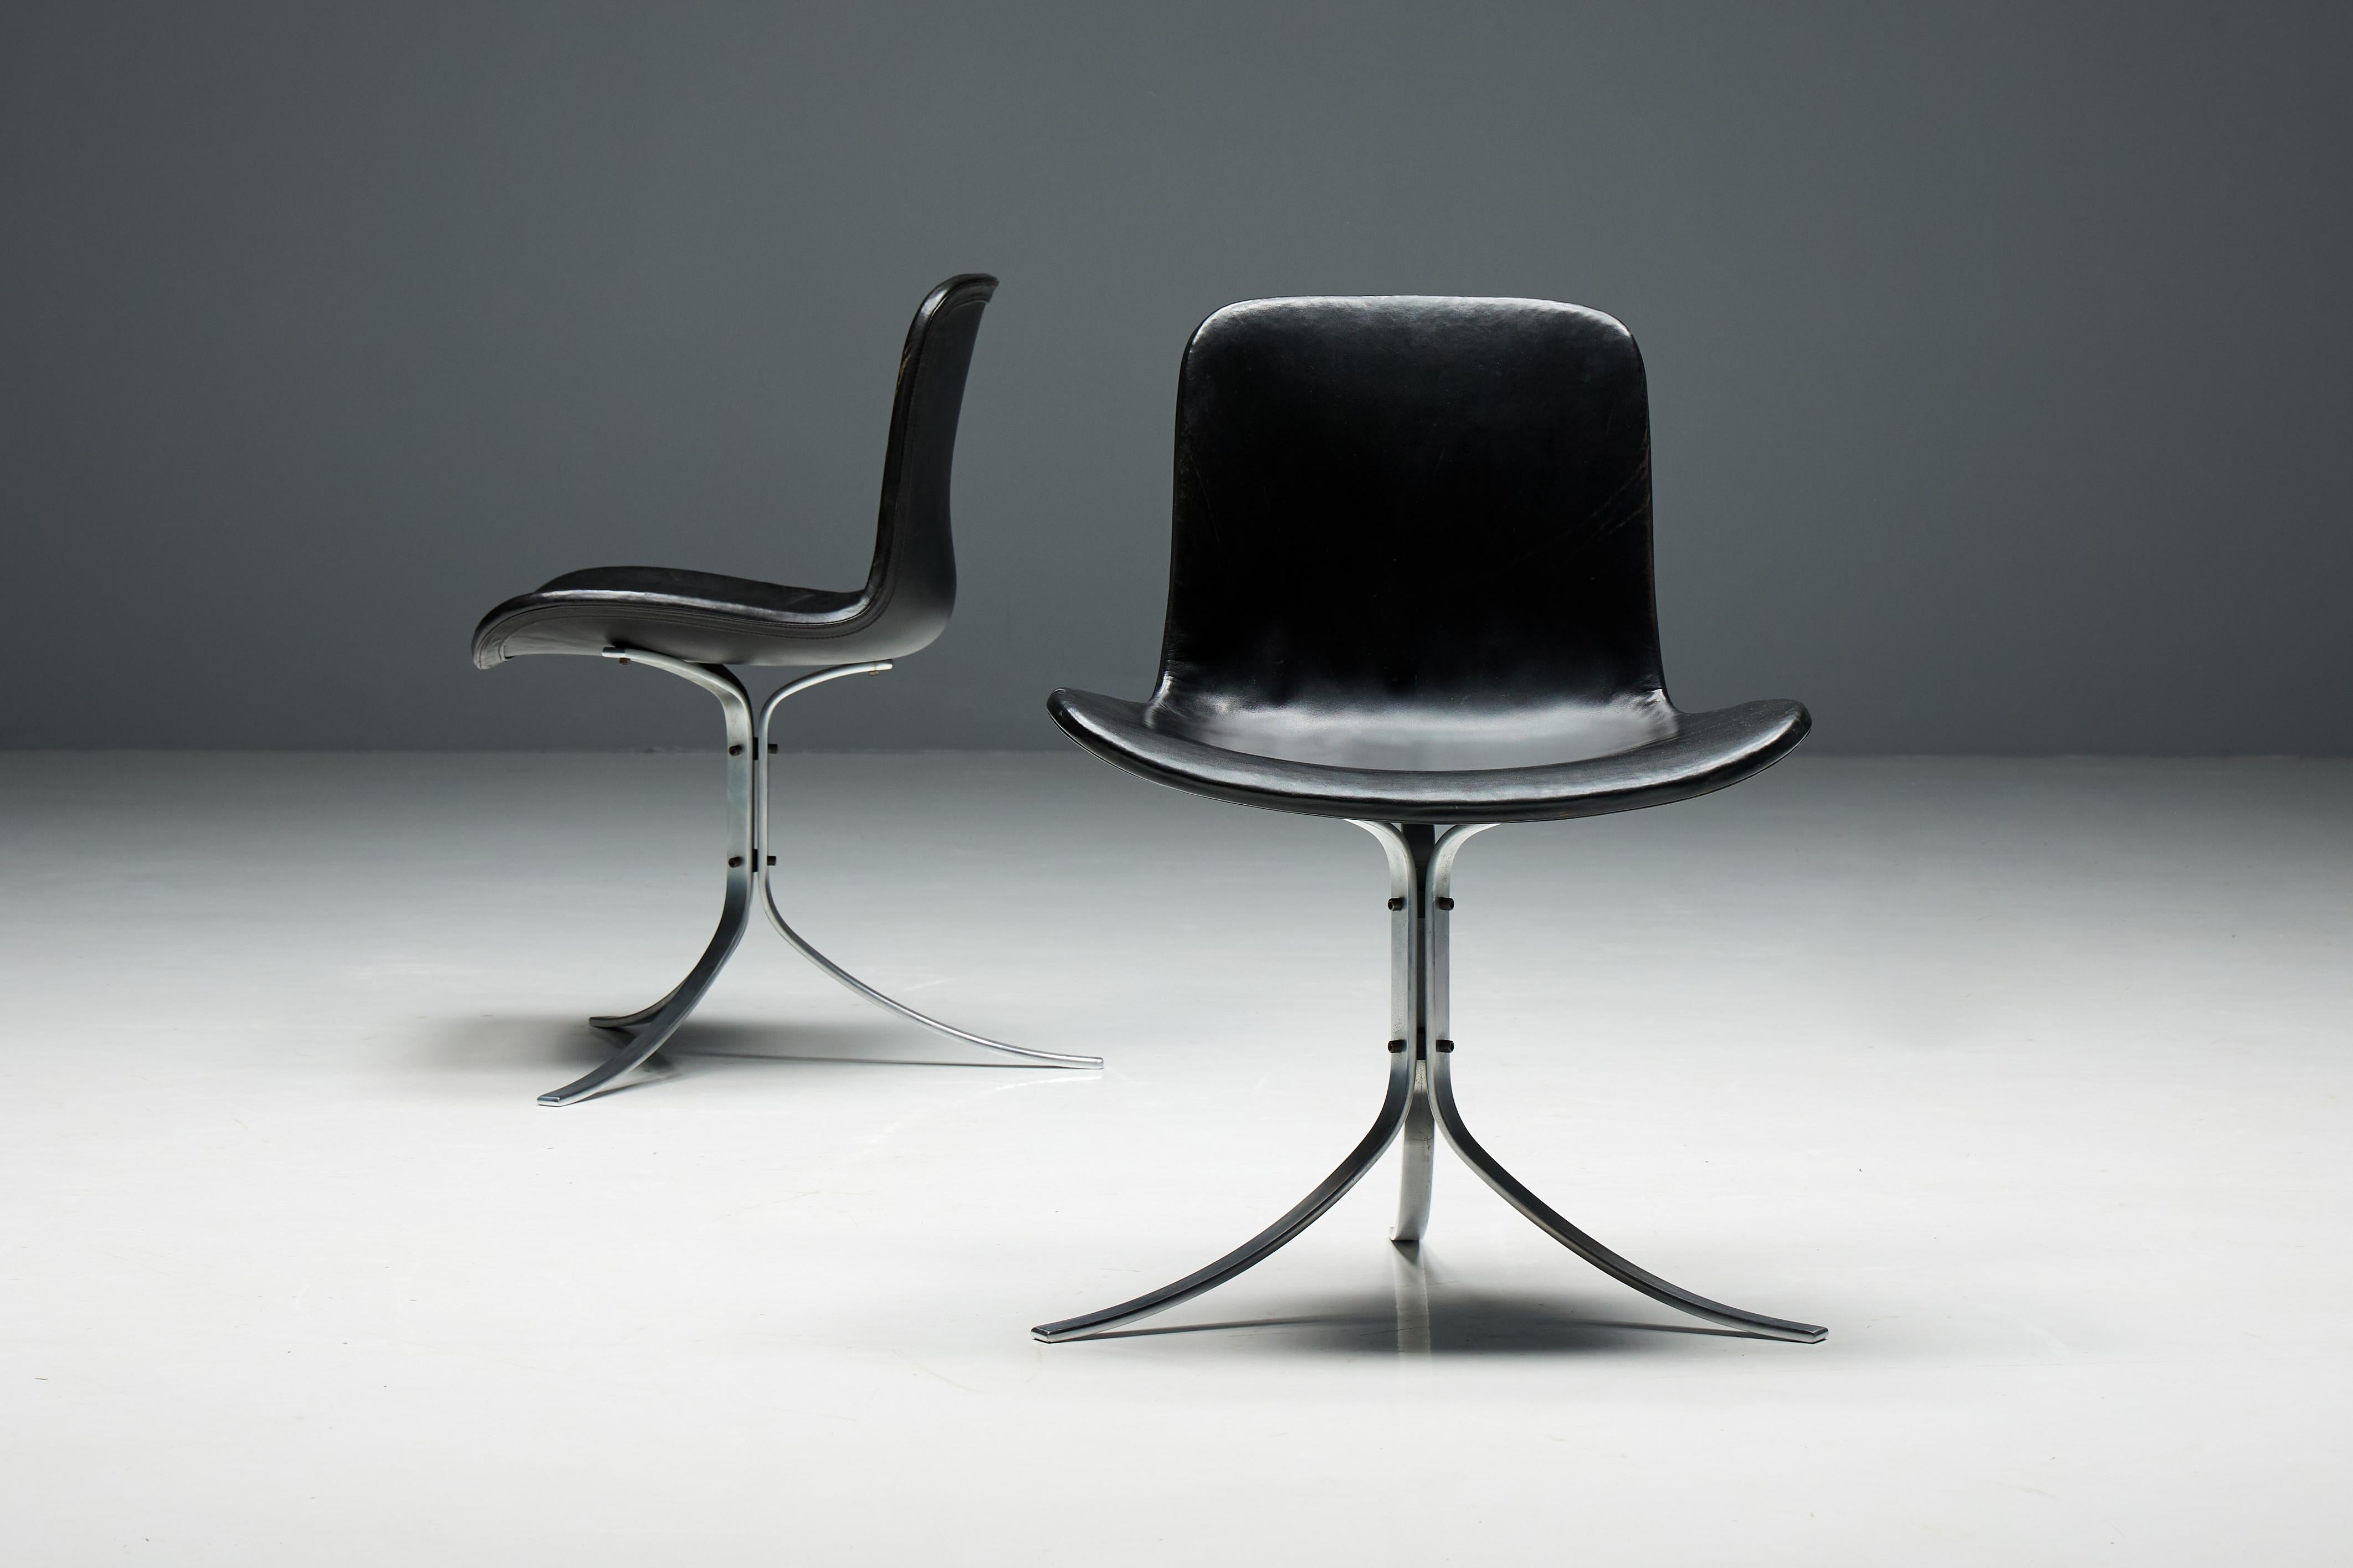 Der von Poul Kjærholm entworfene und von E. Kold Christensen produzierte Stuhl PK9, auch bekannt als Tulpenstuhl. Seine unverwechselbare Silhouette, die durch drei makellos gefertigte Federn aus satiniertem Edelstahl gekennzeichnet ist, die als